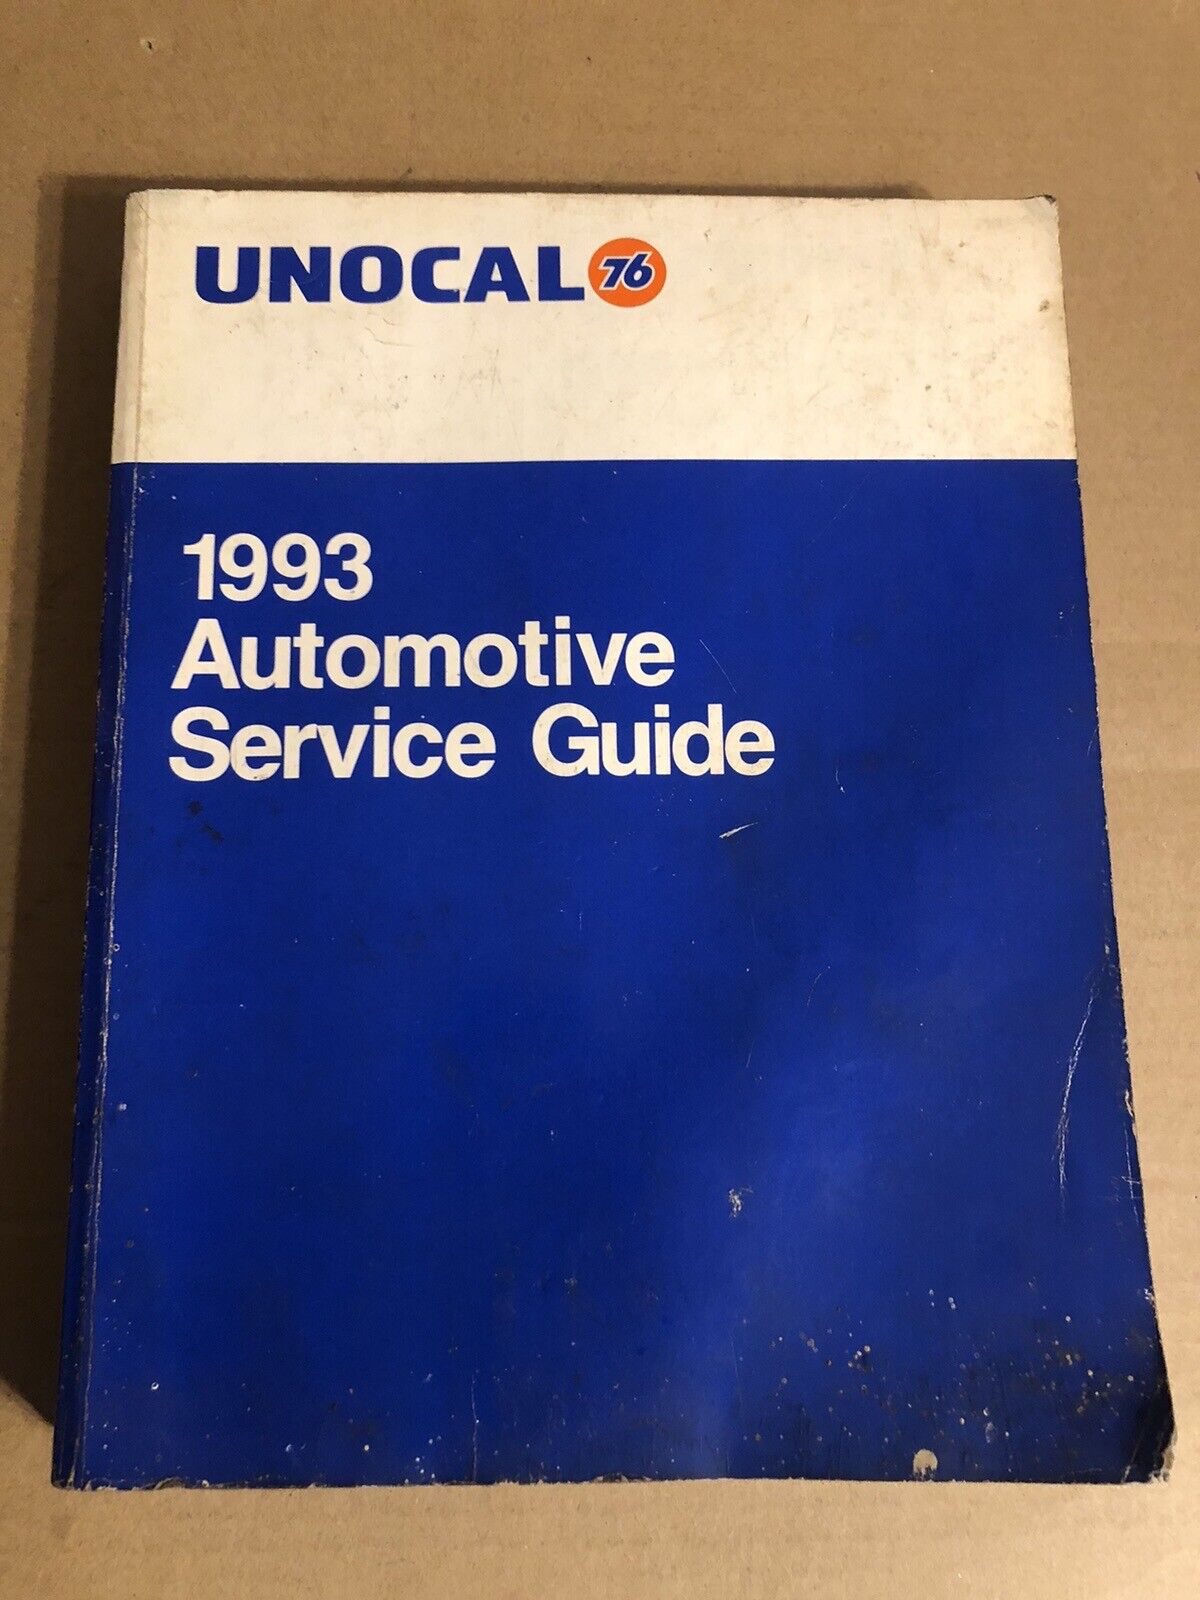 Unocal Union 76 1993 Automotive Service Guide